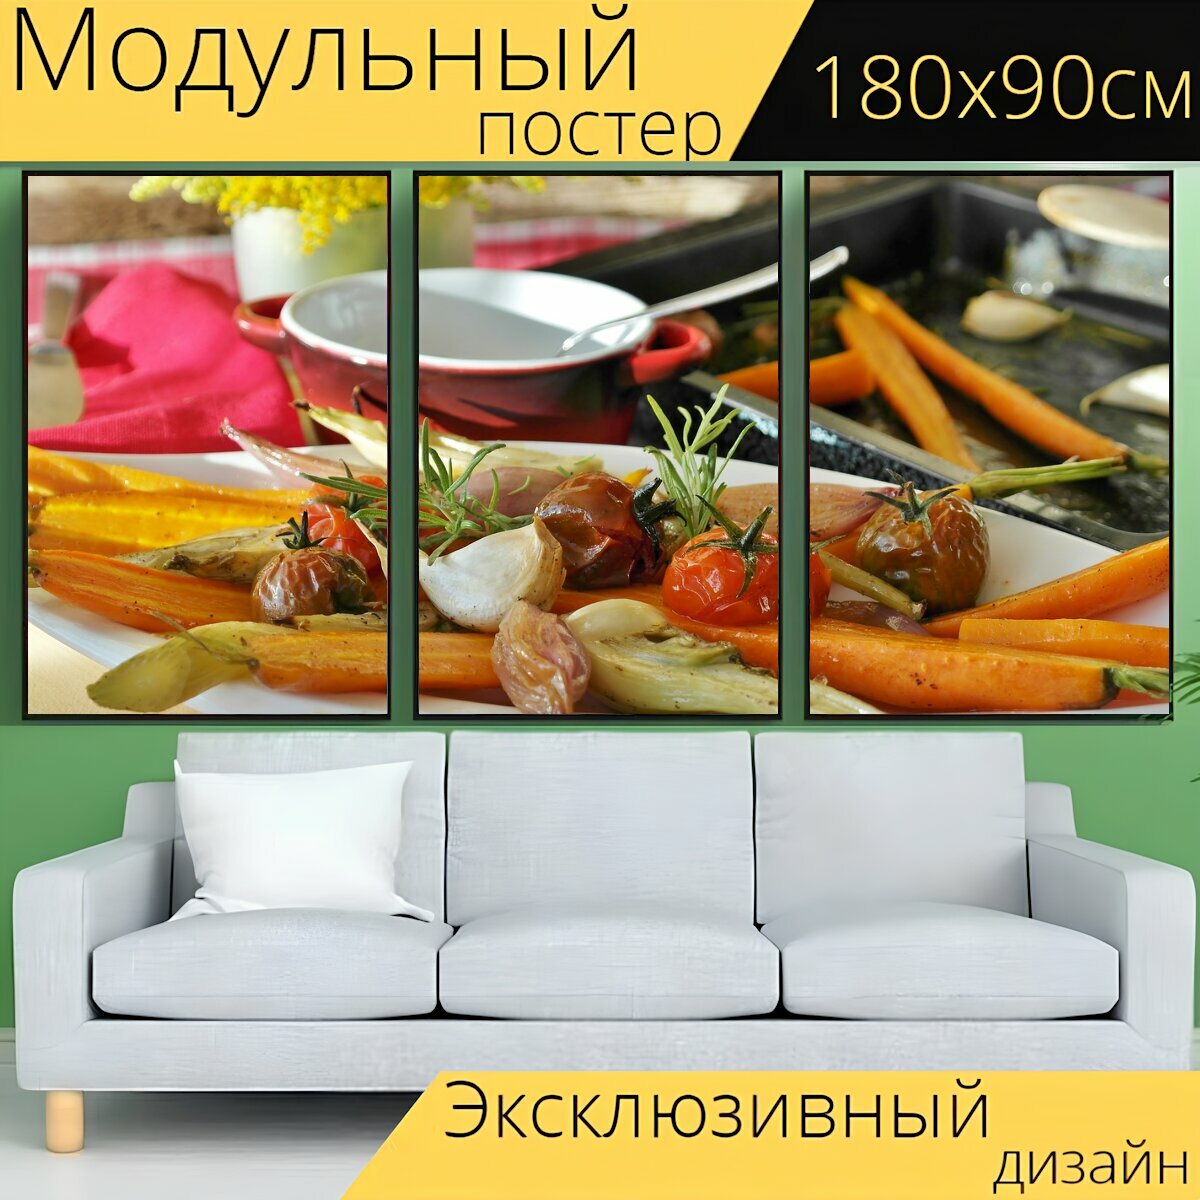 Модульный постер "Овощи, овощная сковорода, гриль" 180 x 90 см. для интерьера